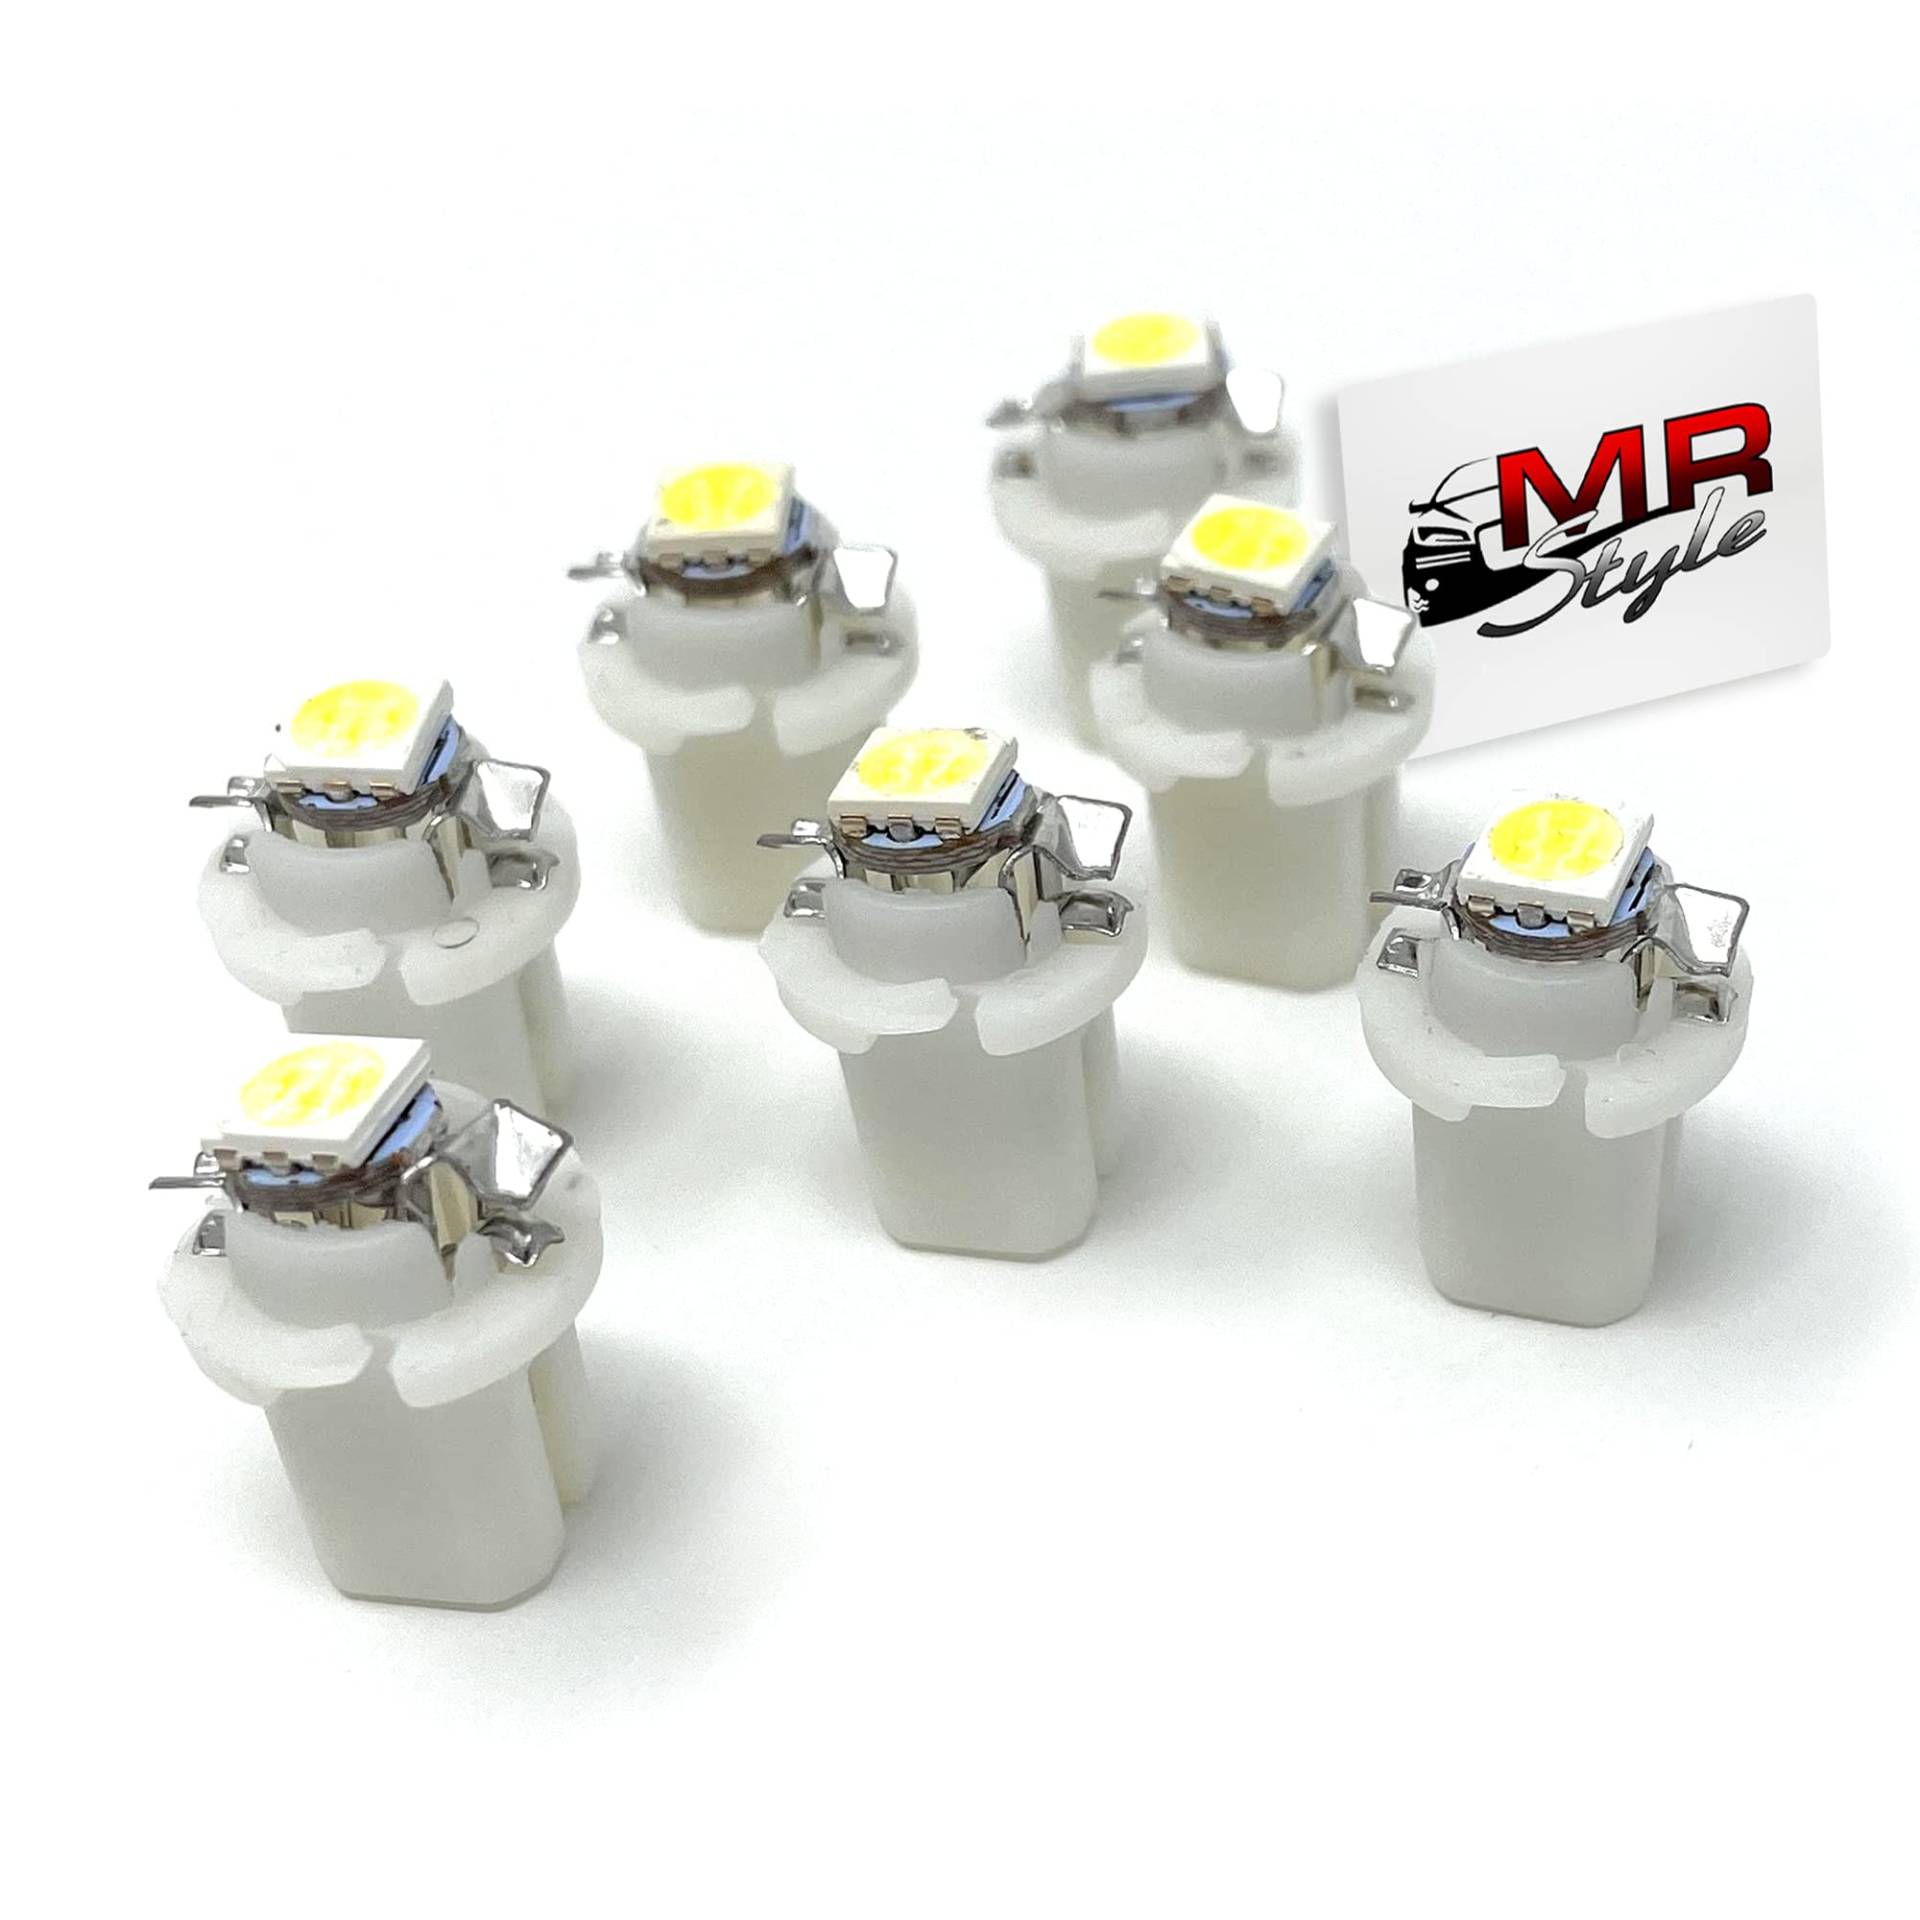 MR-Style Set Aufkleber und 7x high Power LED Tachobeleuchtung (weiß) kompatibel mit Mercedes C-Klasse W202 - Bj. 93-97, Instrumentenbeleuchtung Umbauset von MR-Style